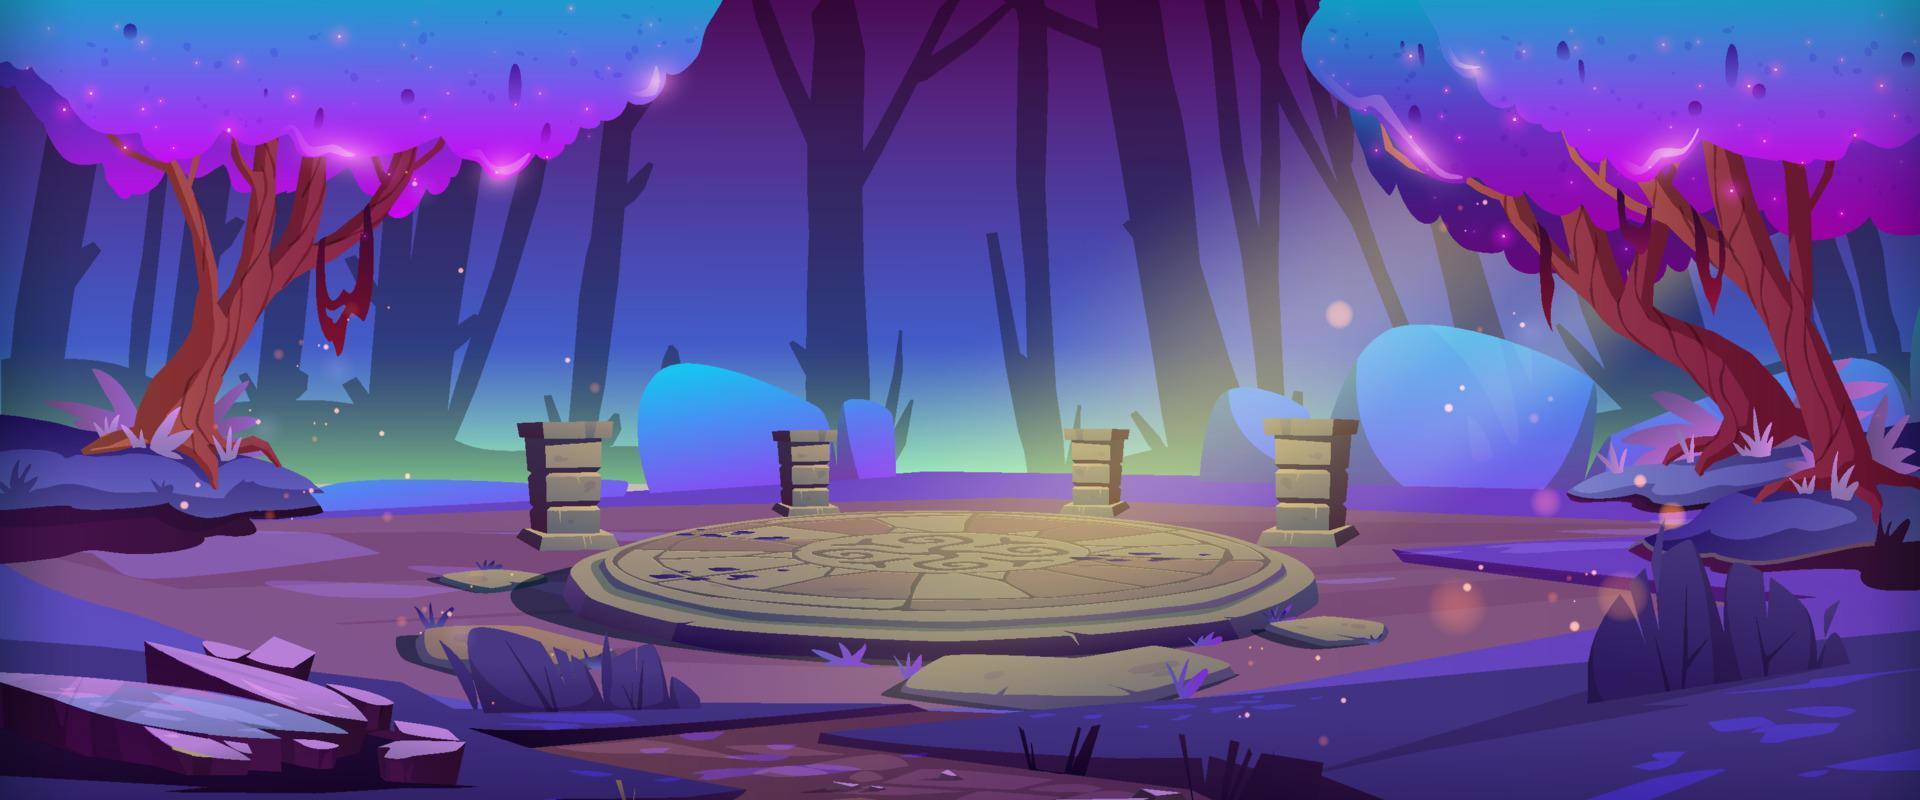 floresta mágica com altar de pedra redonda à noite vetor